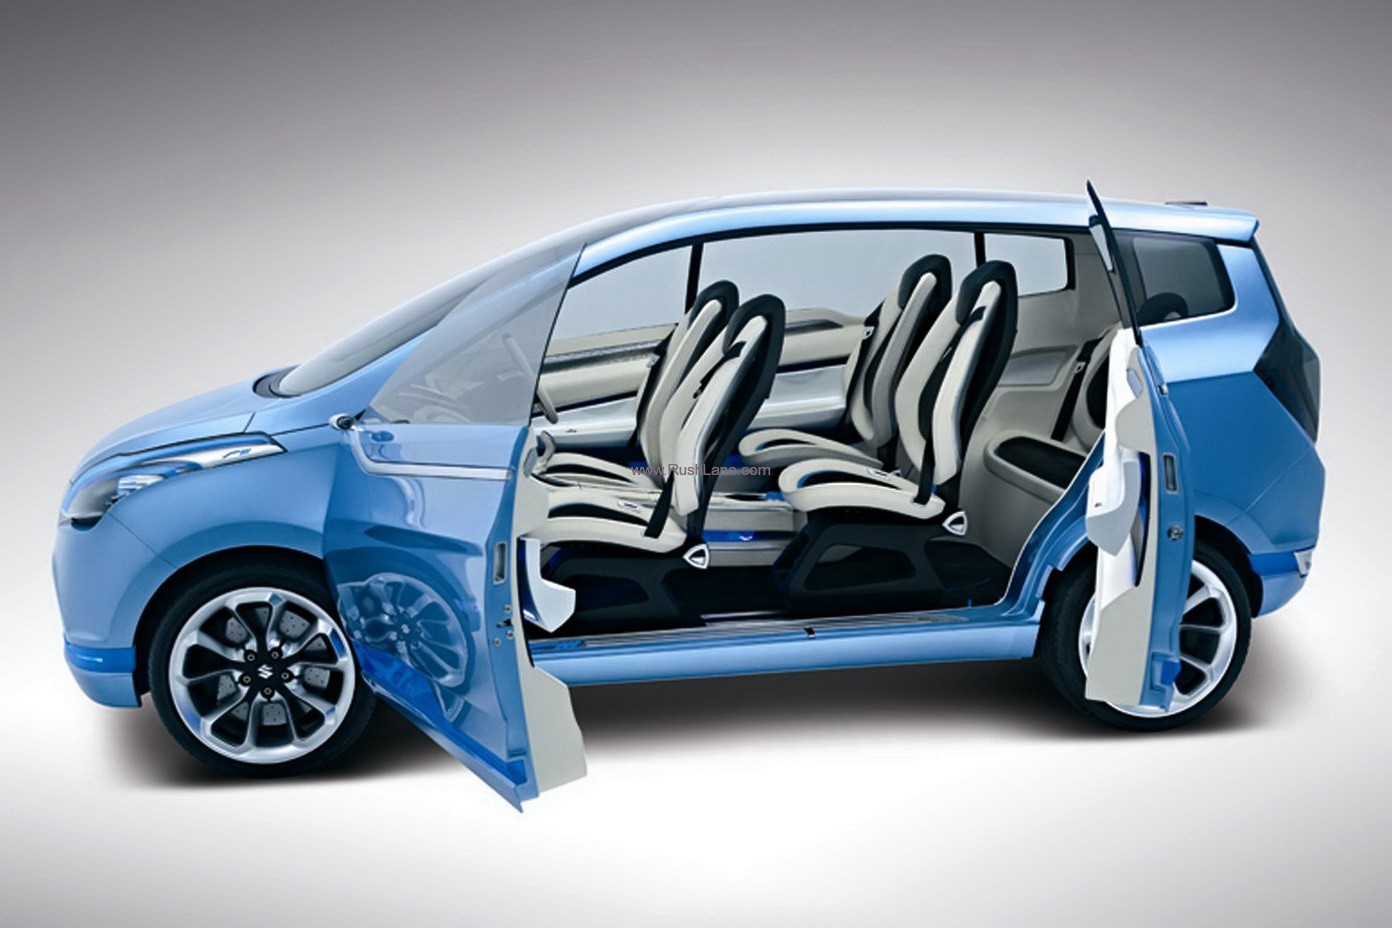 Luxury Suzuki Cars for 2015